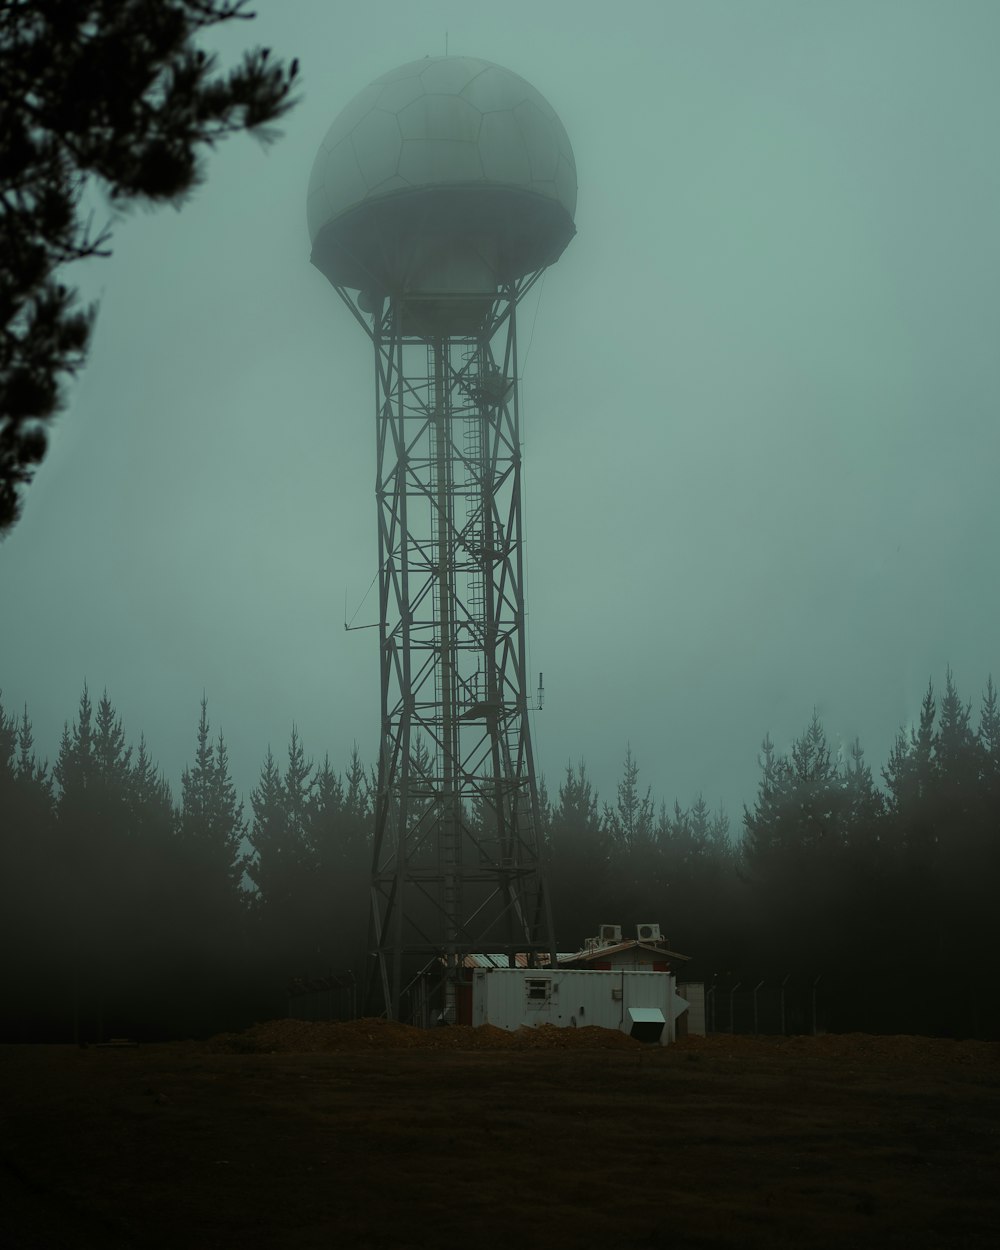 Ein Wasserturm mitten in einem nebligen Wald